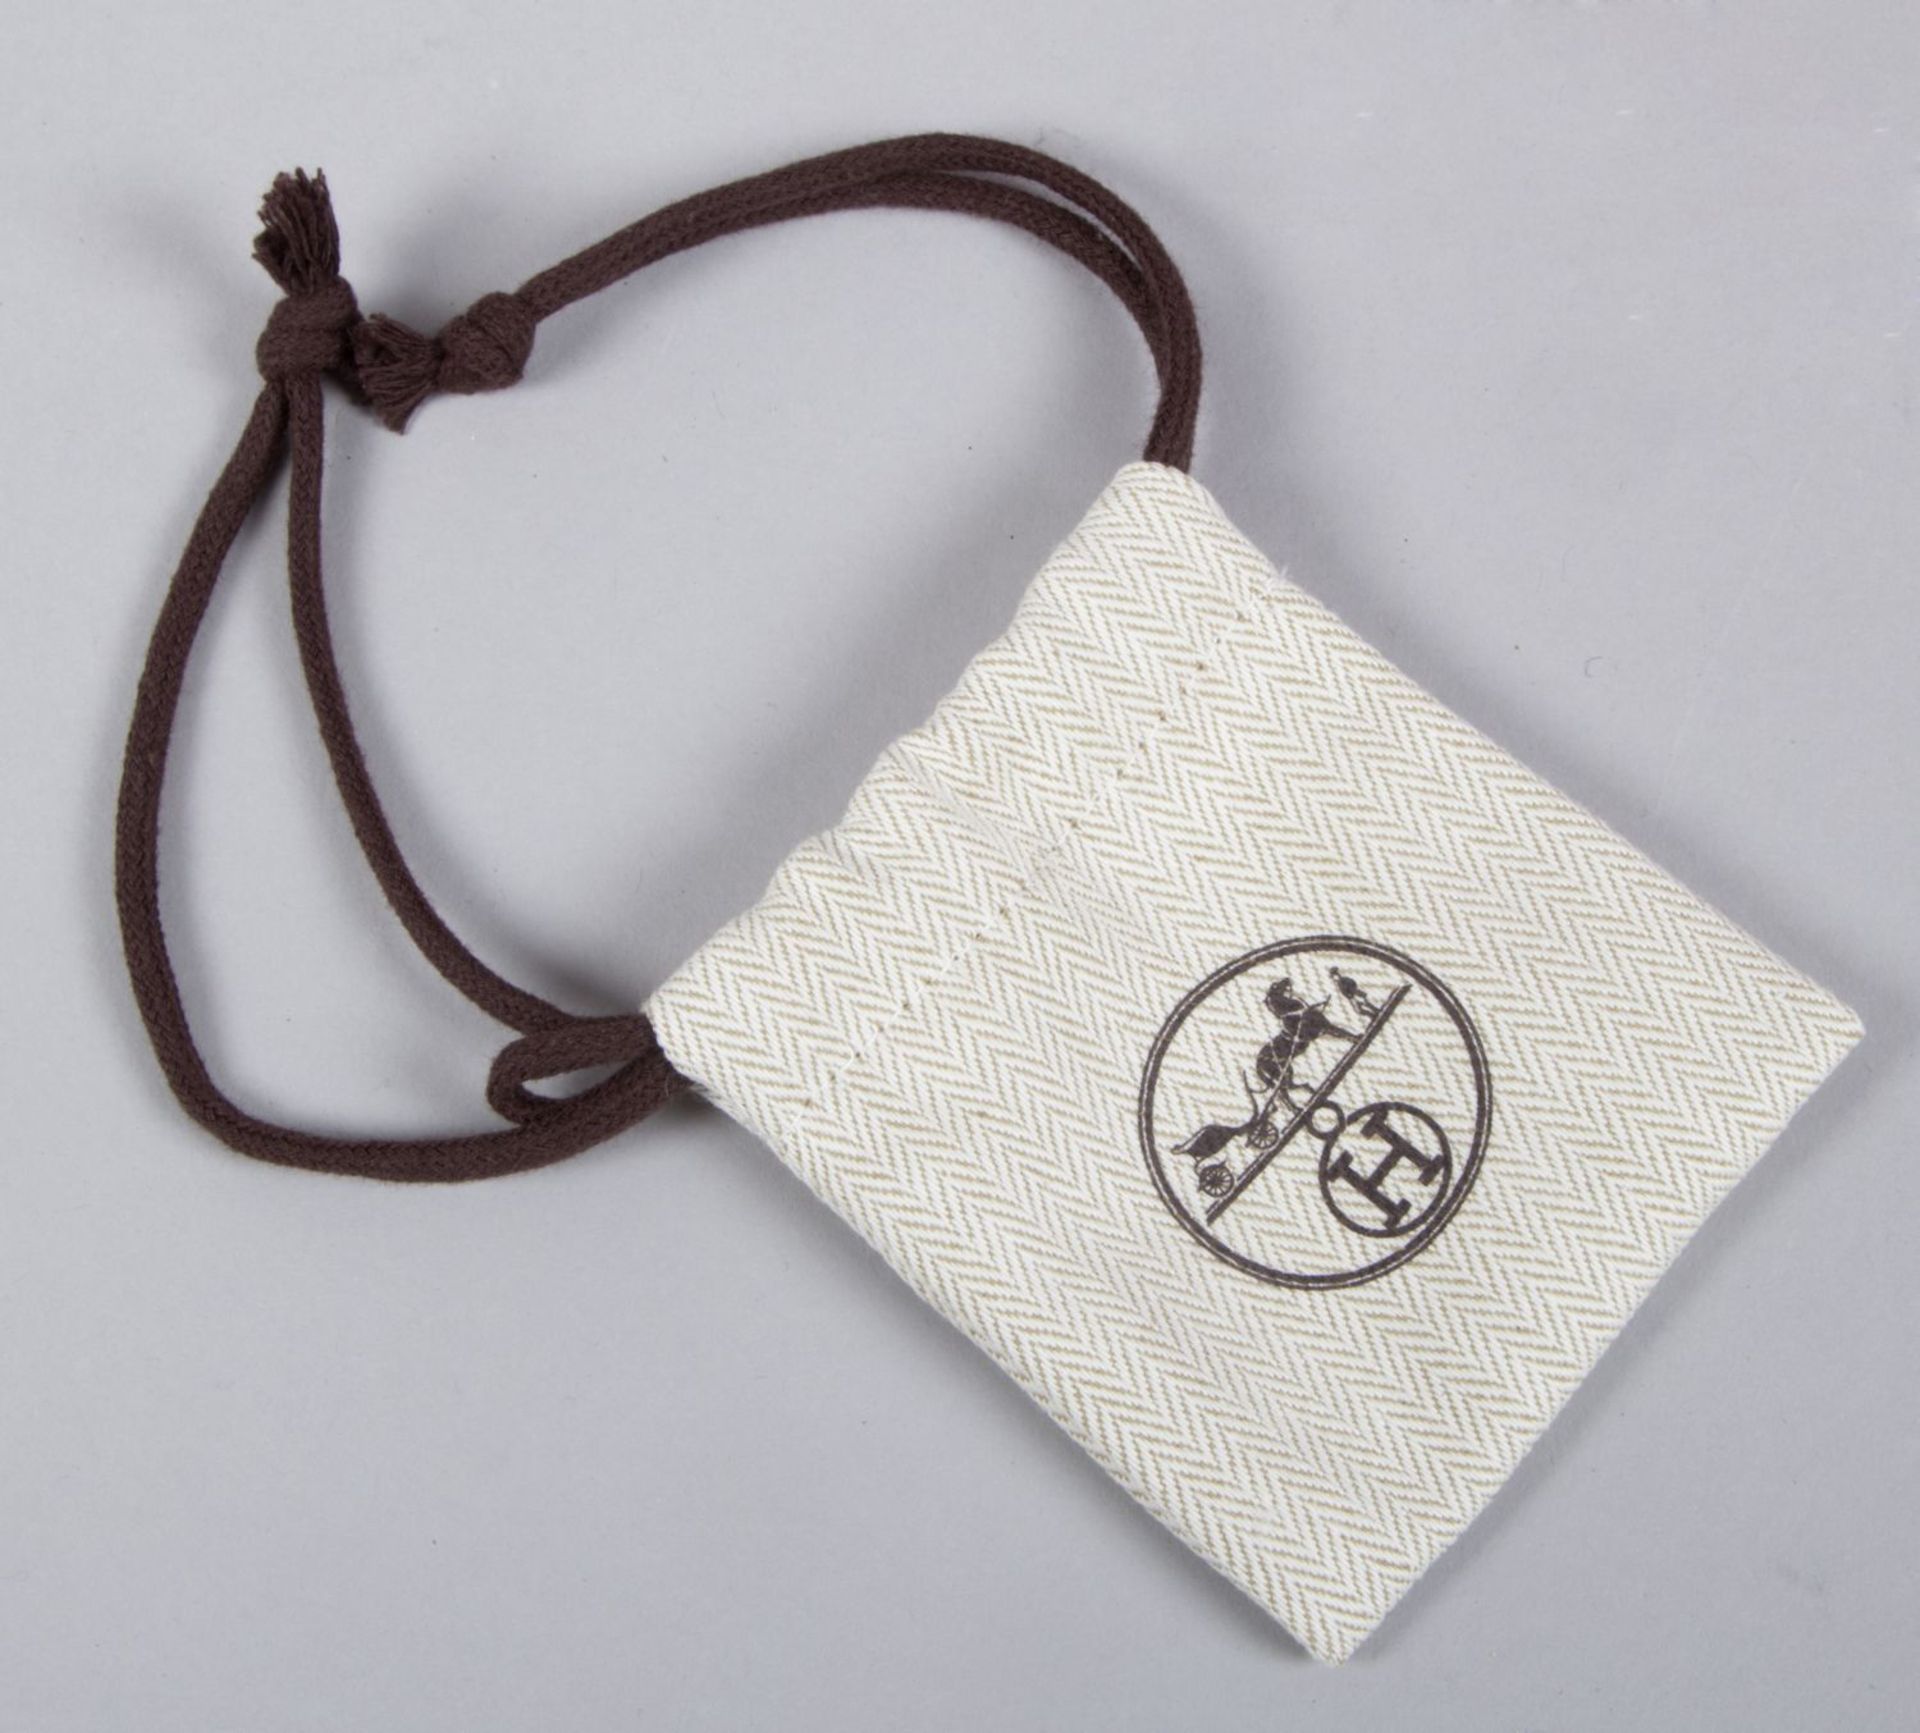 Hermès ''Birkin Bag 35'' Kalbsleder in Fuchsia mit weißer Naht. Beschläge mit Palladiumauflage. Trap - Bild 9 aus 10